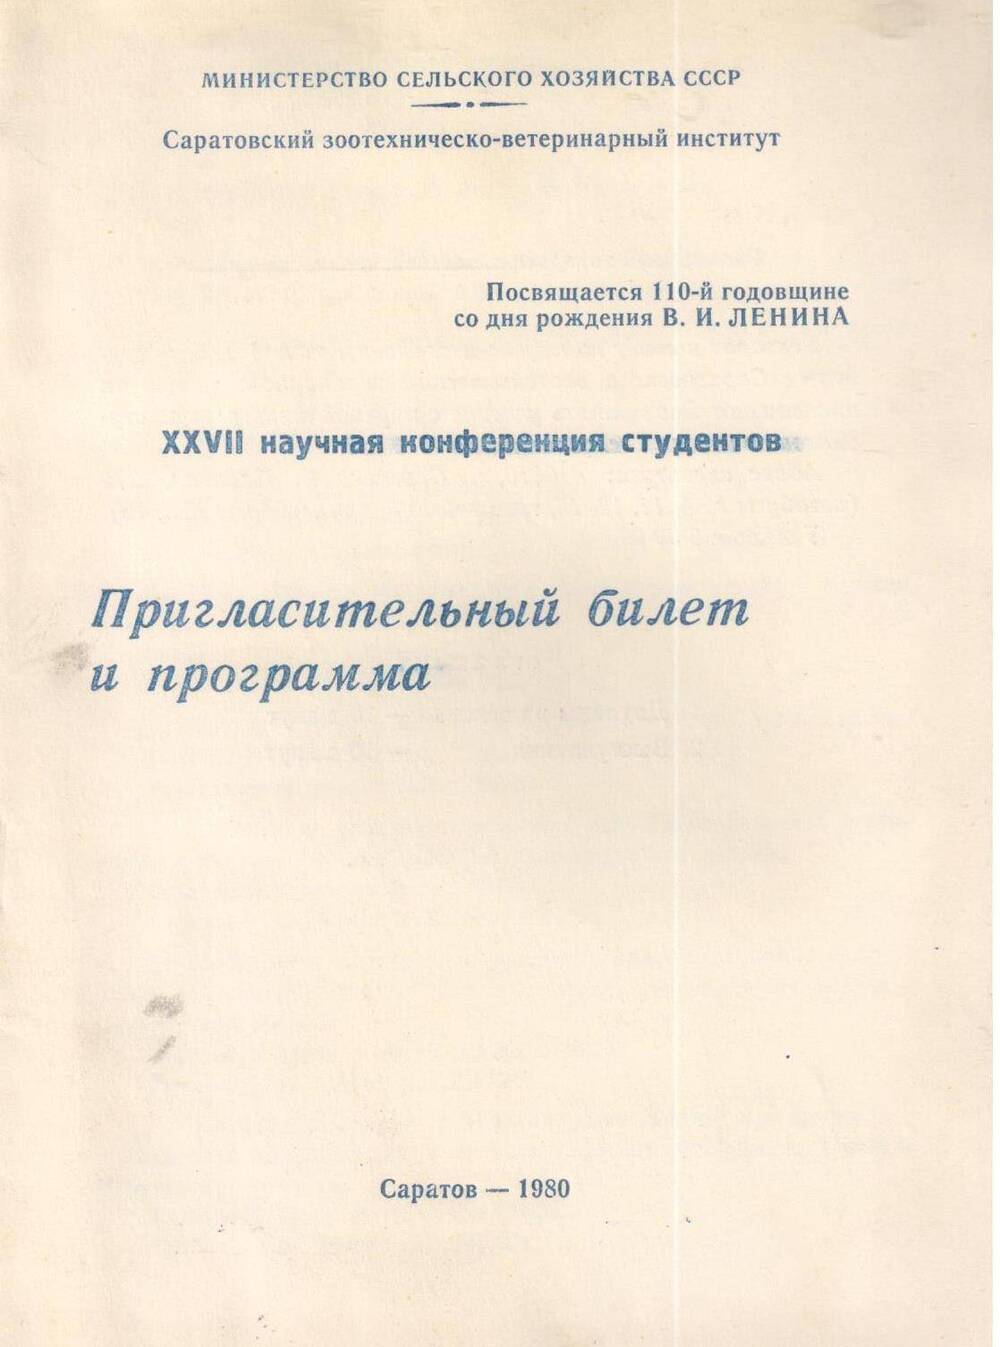 Пригласительный билет и программа XXVII научной конференции студентов, посвященной 110-й годовщине со дня рождения В.И. Ленина. 1980 год